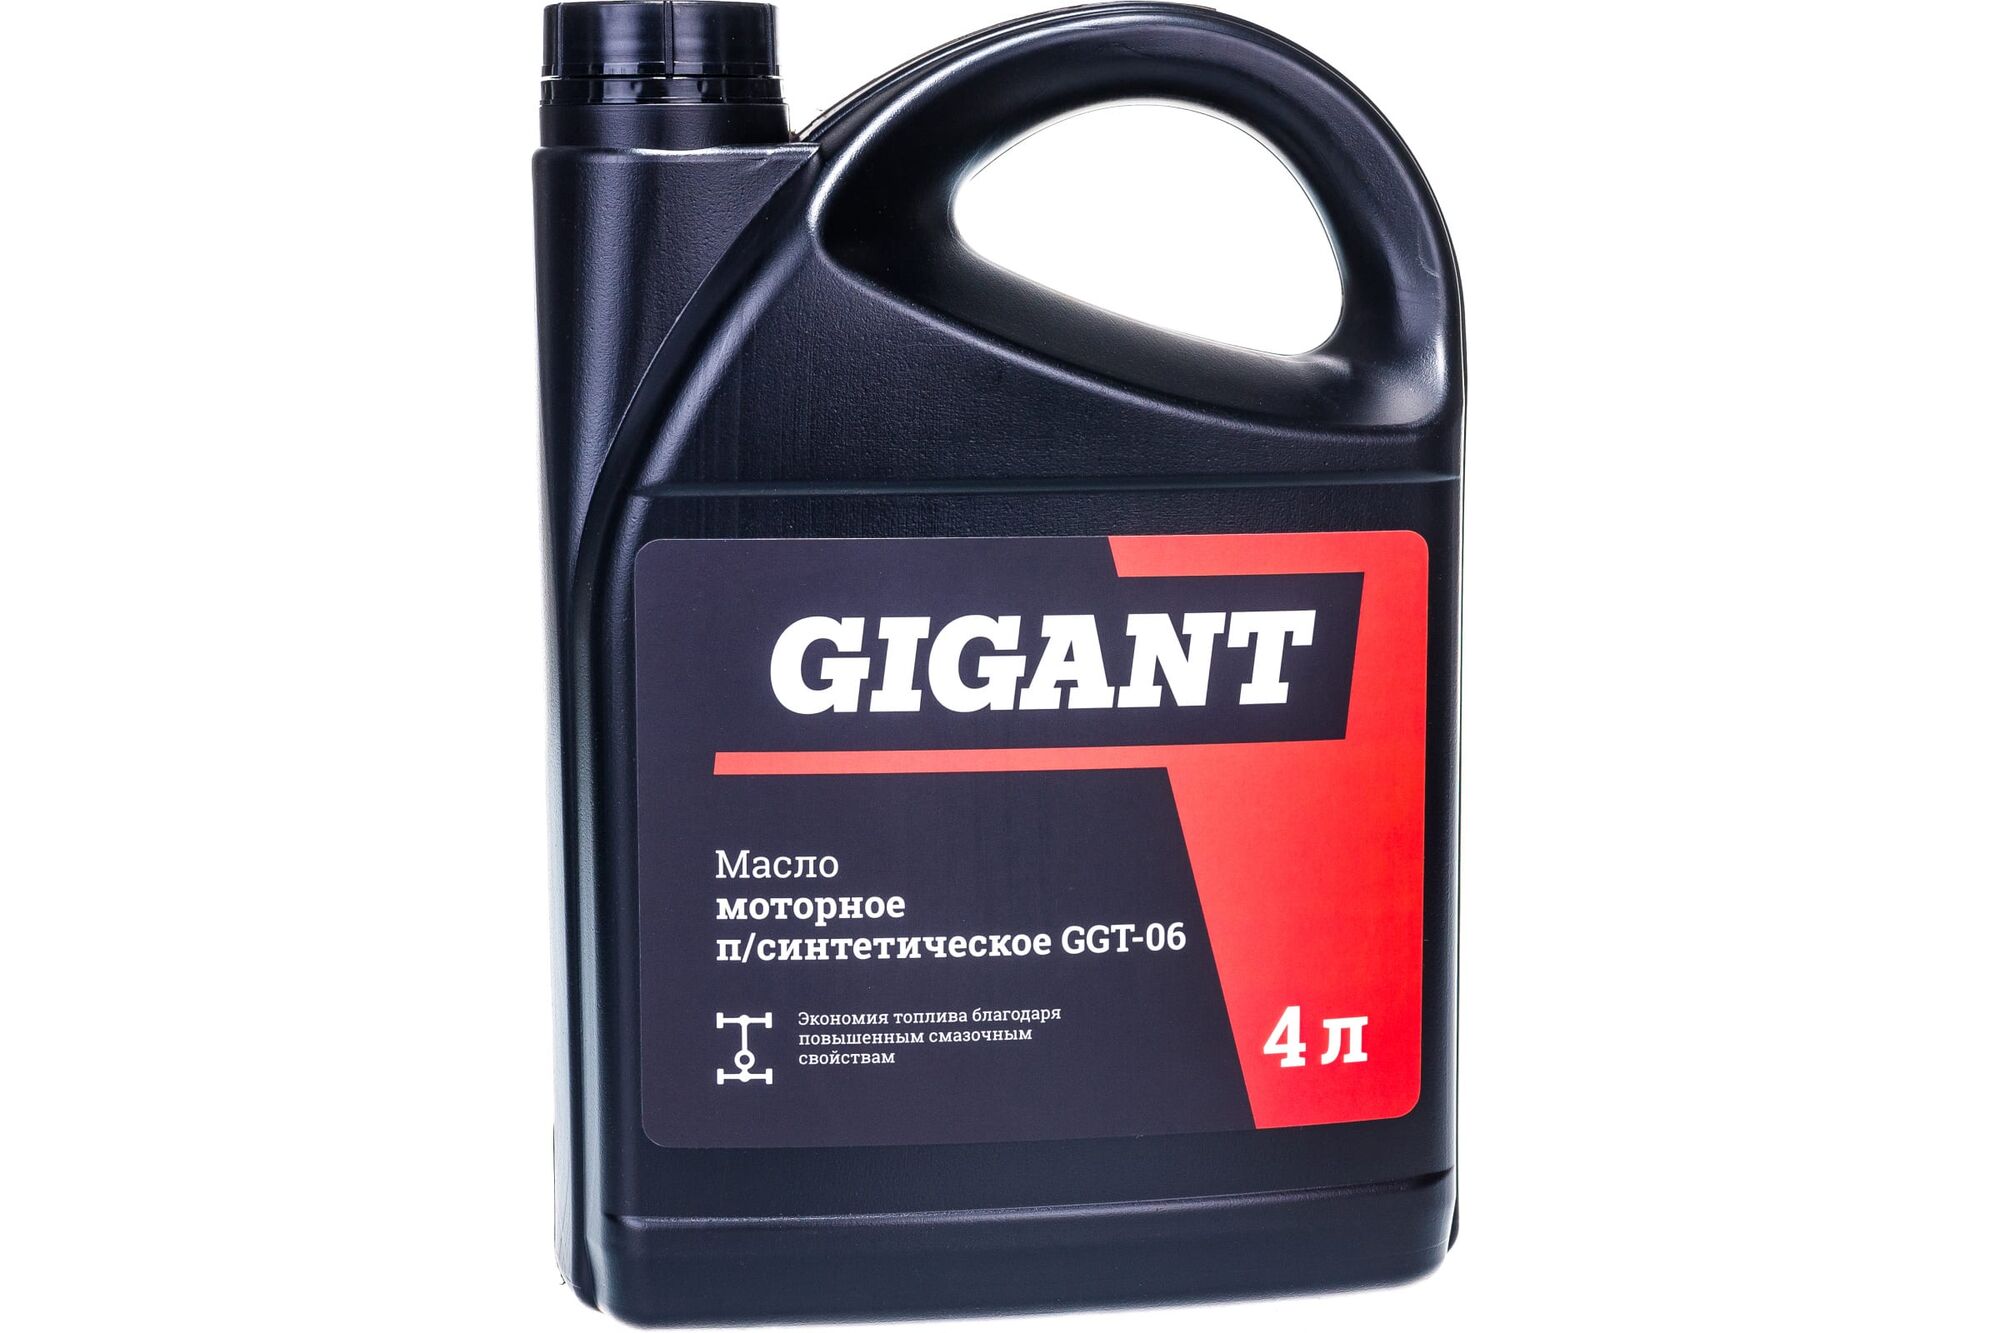 Моторное масло Gigant полусинтетическое, 4 л GGT-06